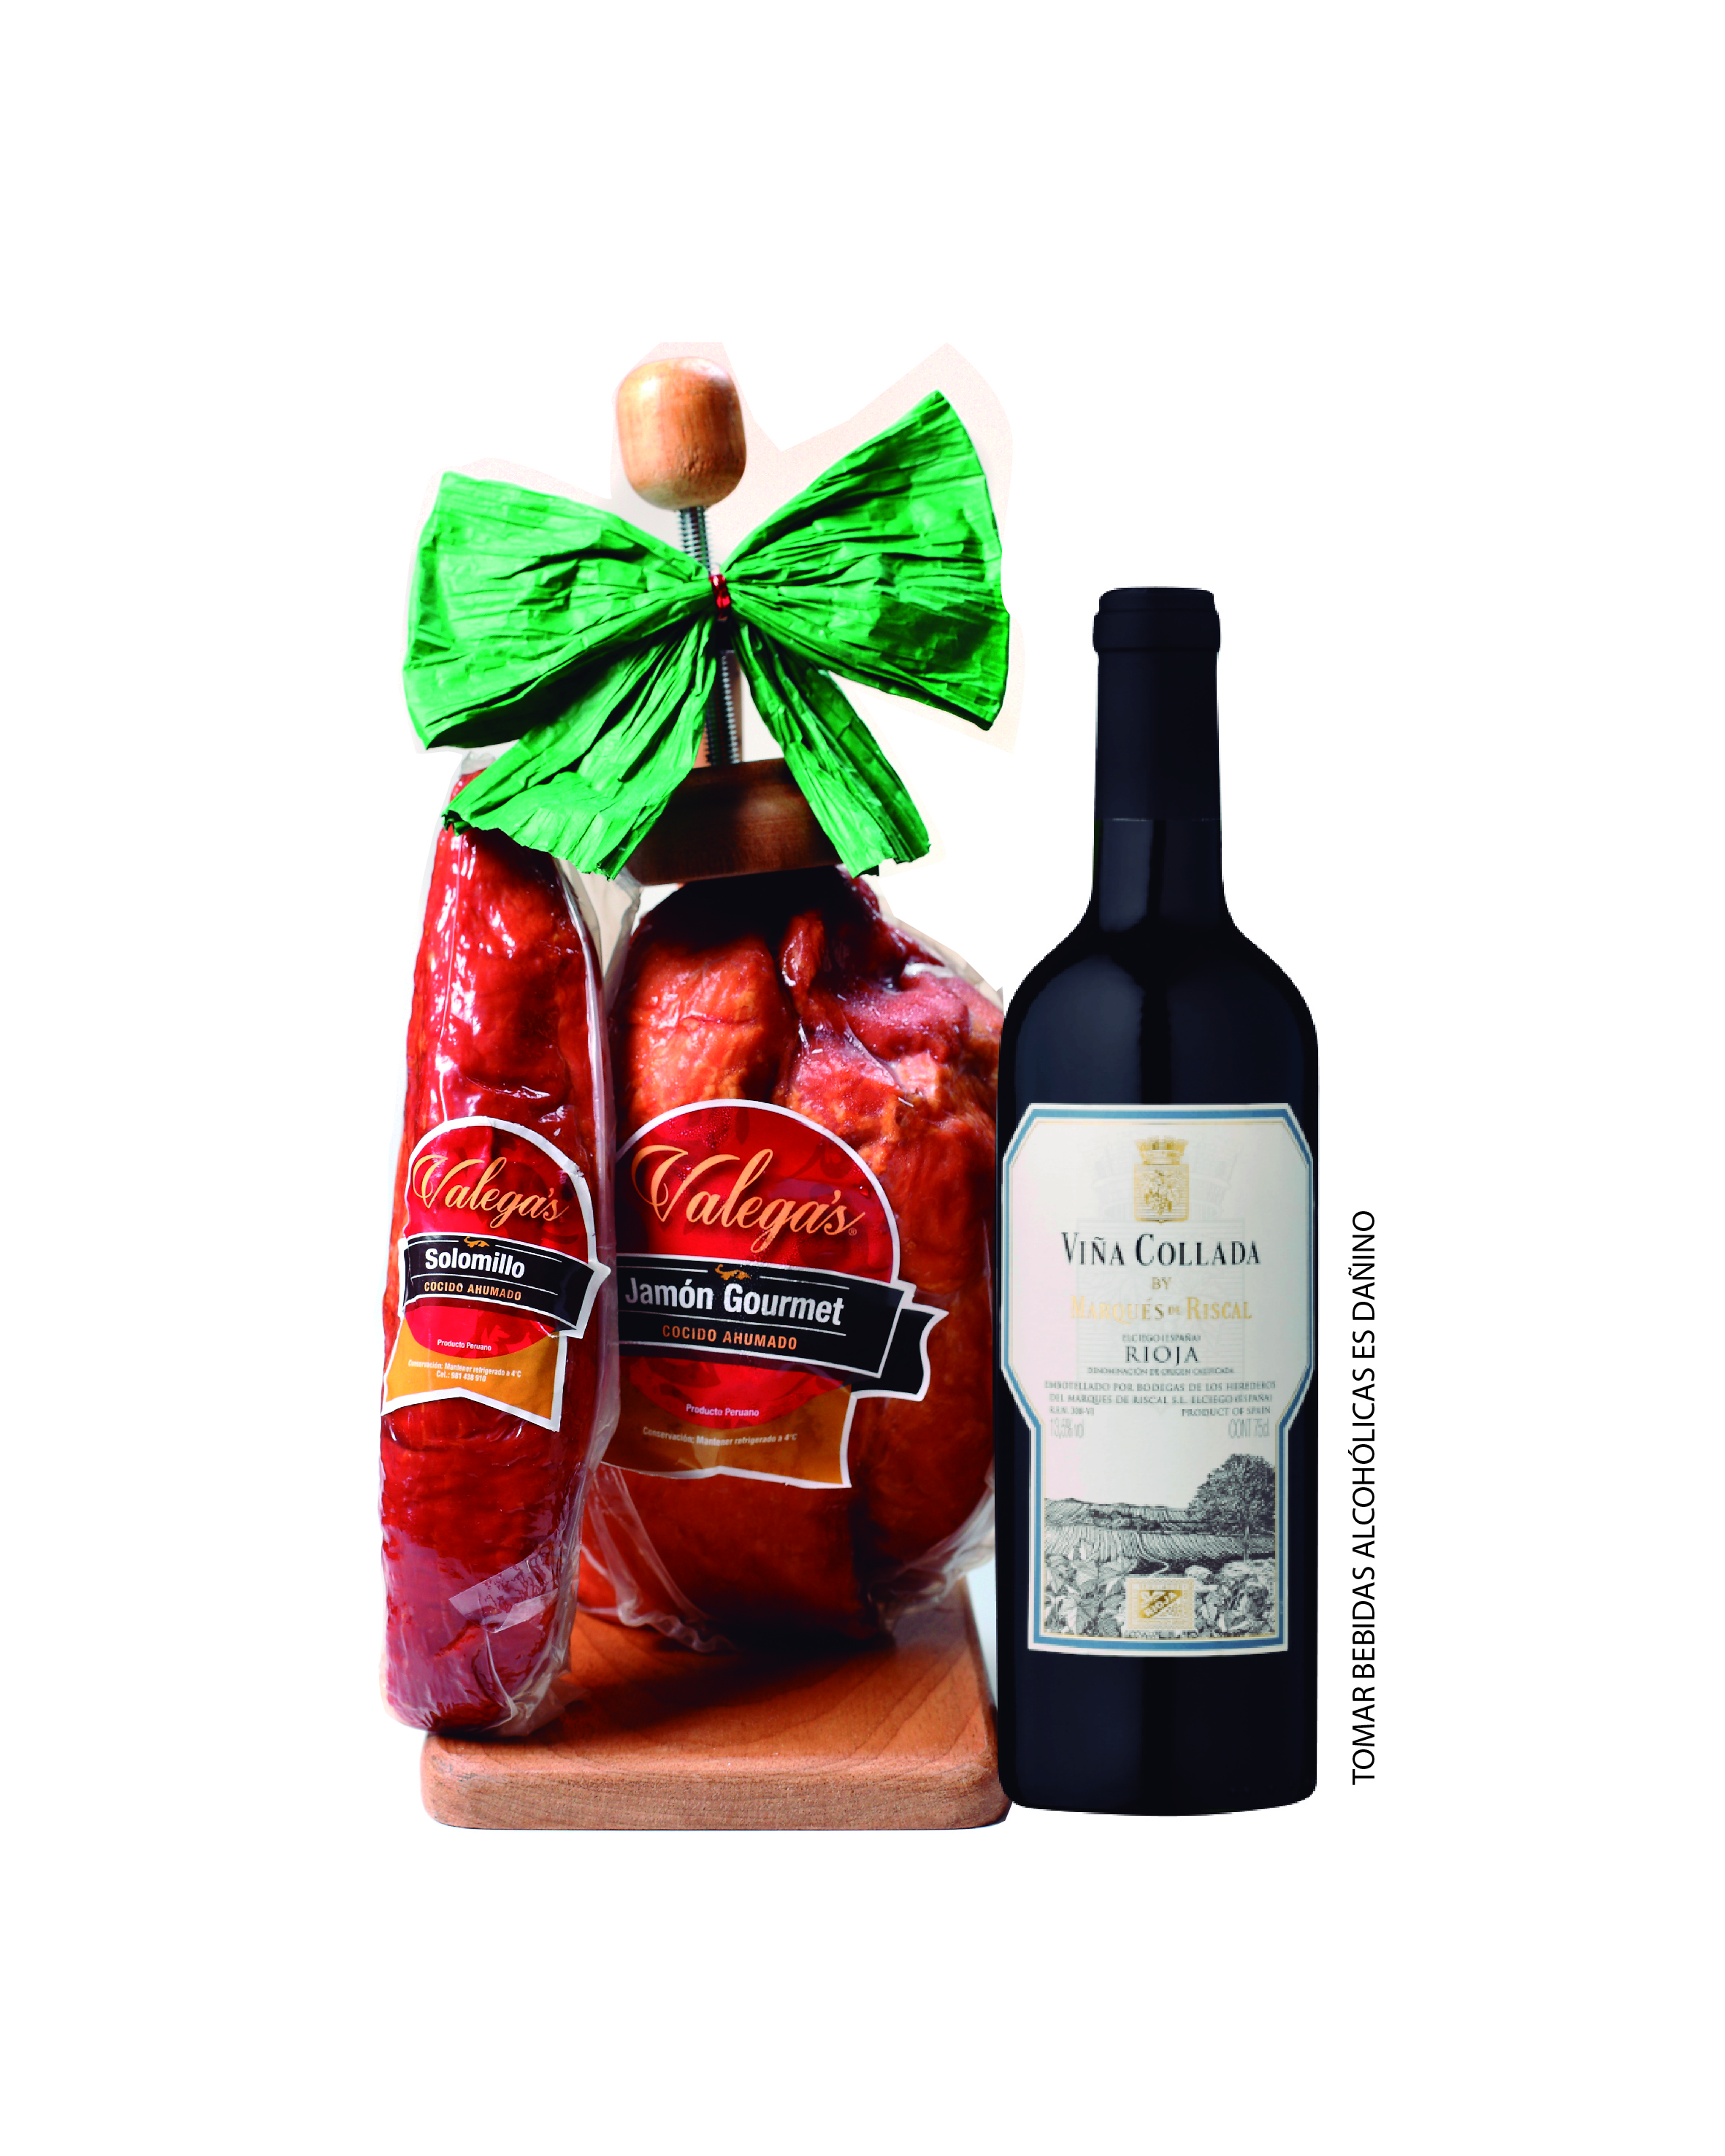 Jamón Gourmet de 2.4 kg aprox. Incluye parador de madera acompañado por un vino Rioja de Marqués del Riscal y 350gr de solomillo. El vino puede variar sujeto a stock. 
